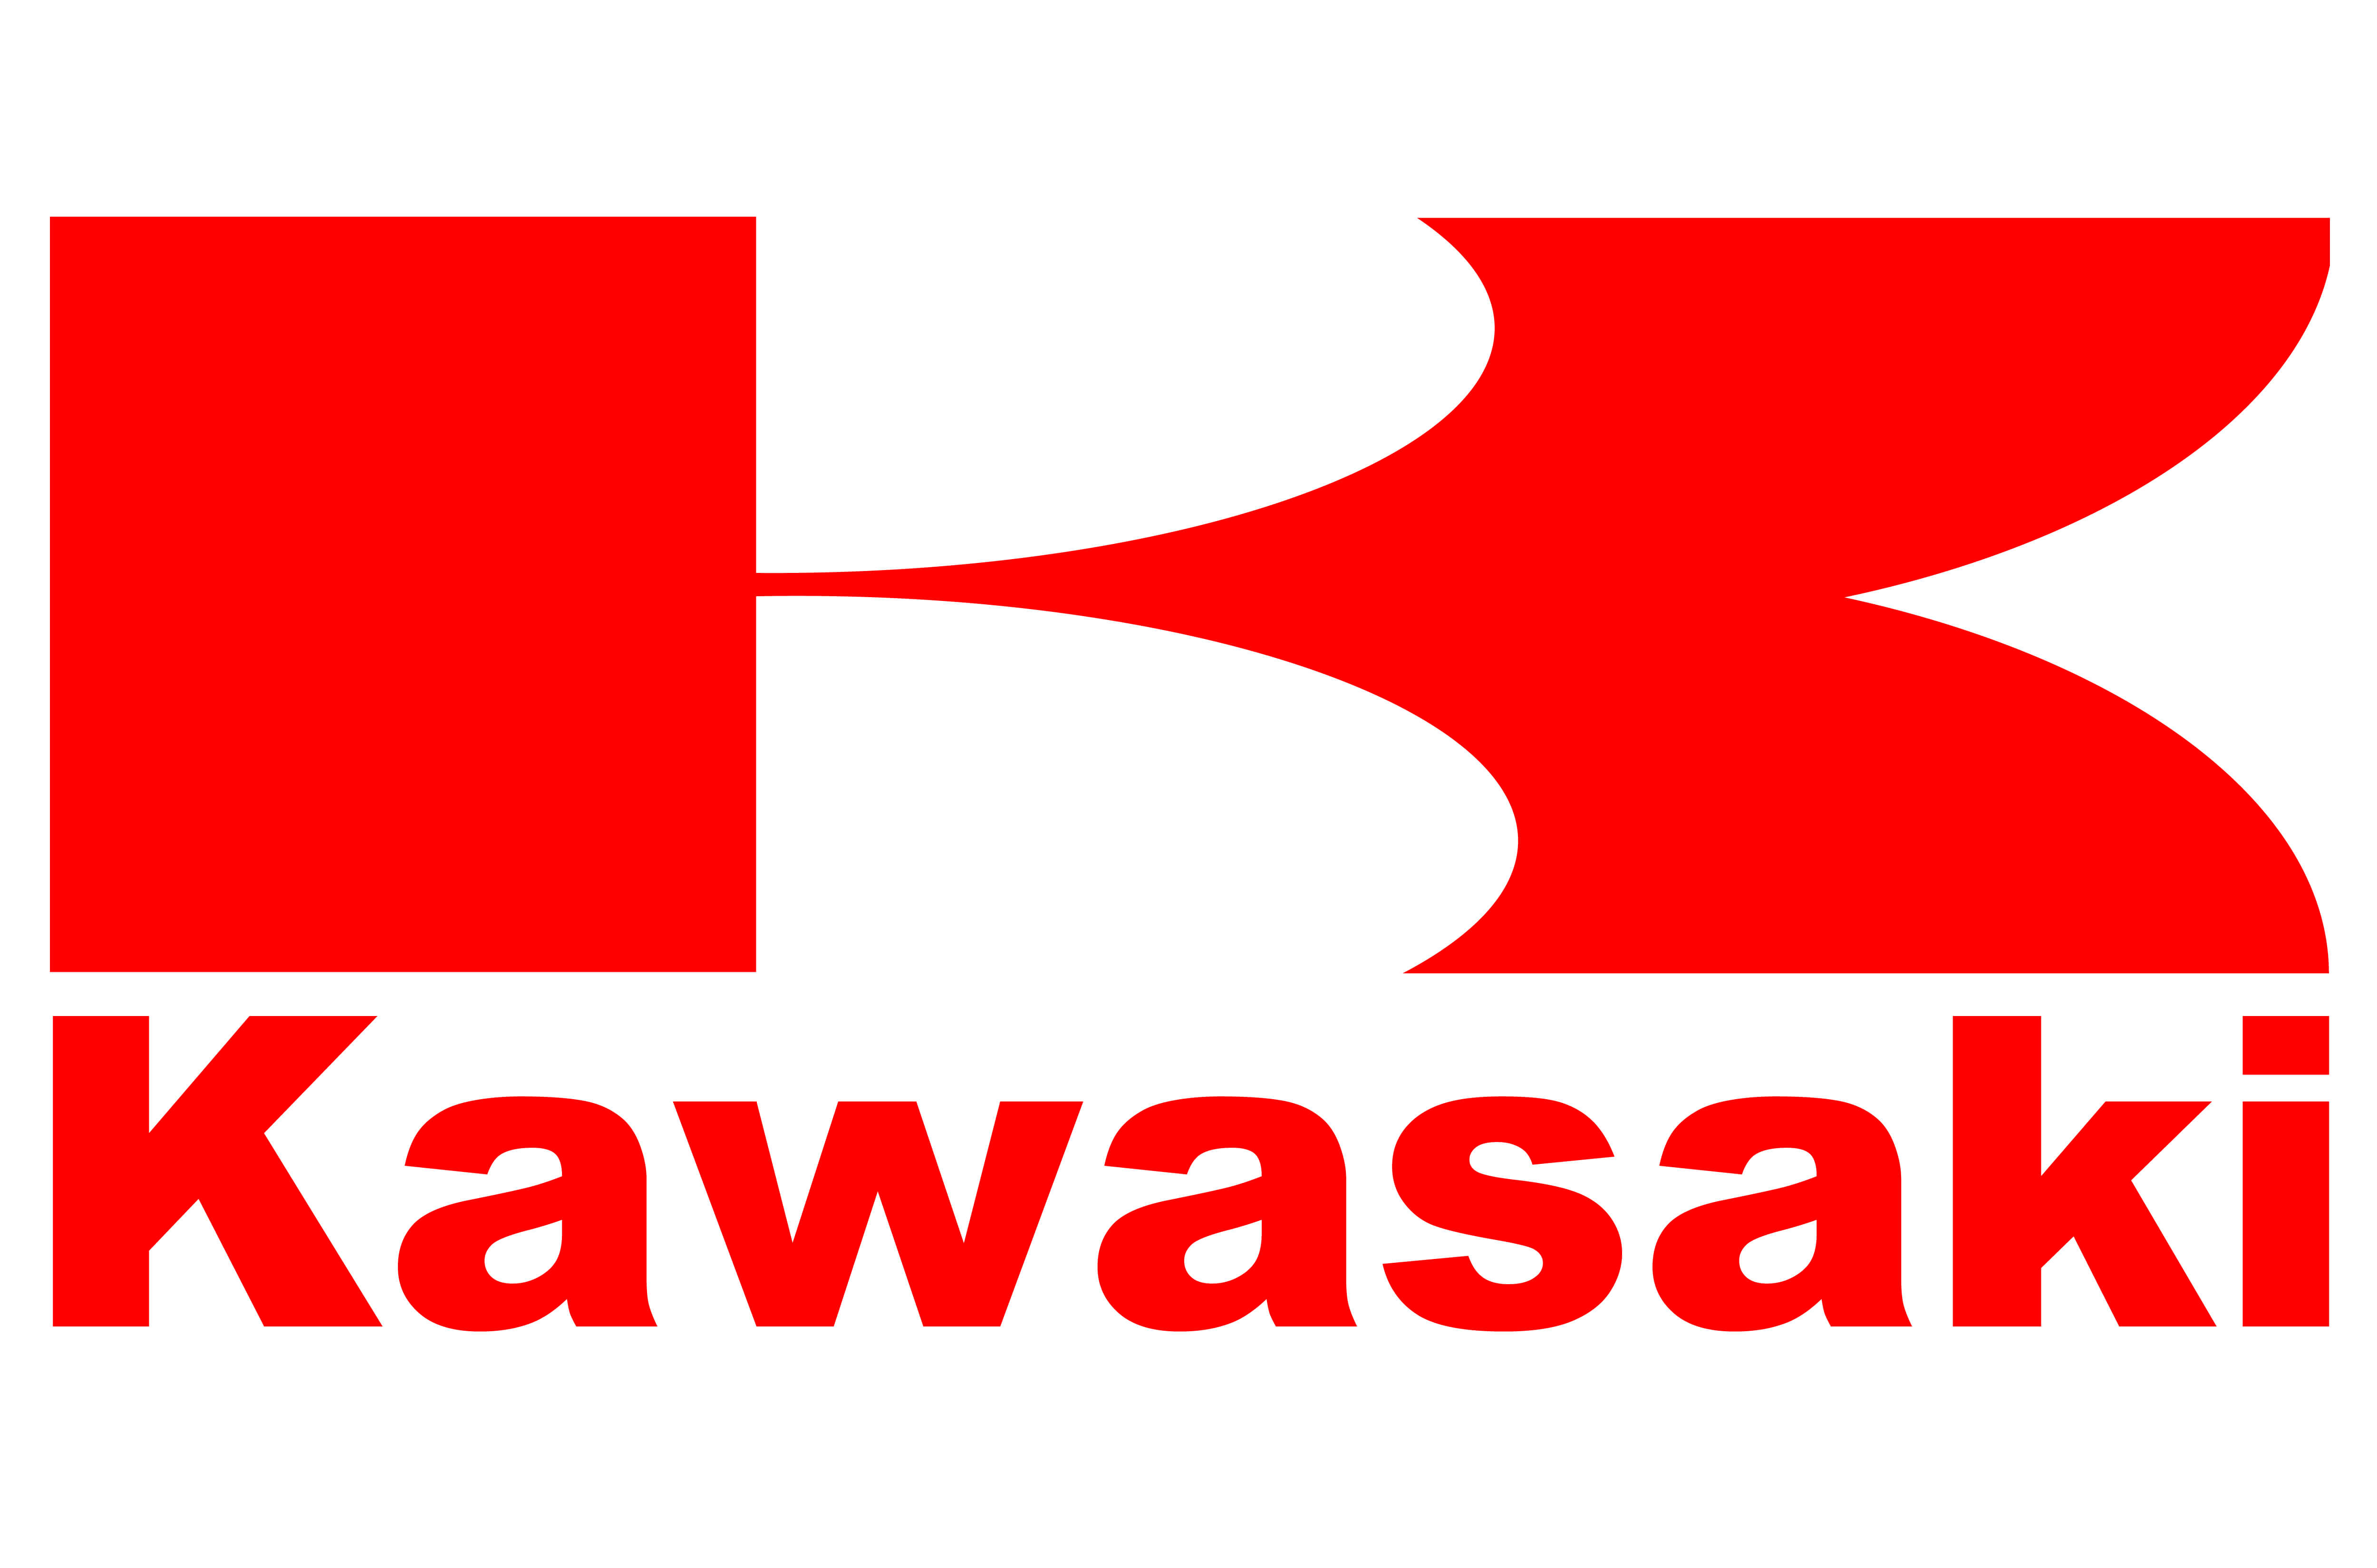 Kawasaki Motorcycle Logo History And Meaning, Bike Emblem - Kawasaki, Transparent background PNG HD thumbnail